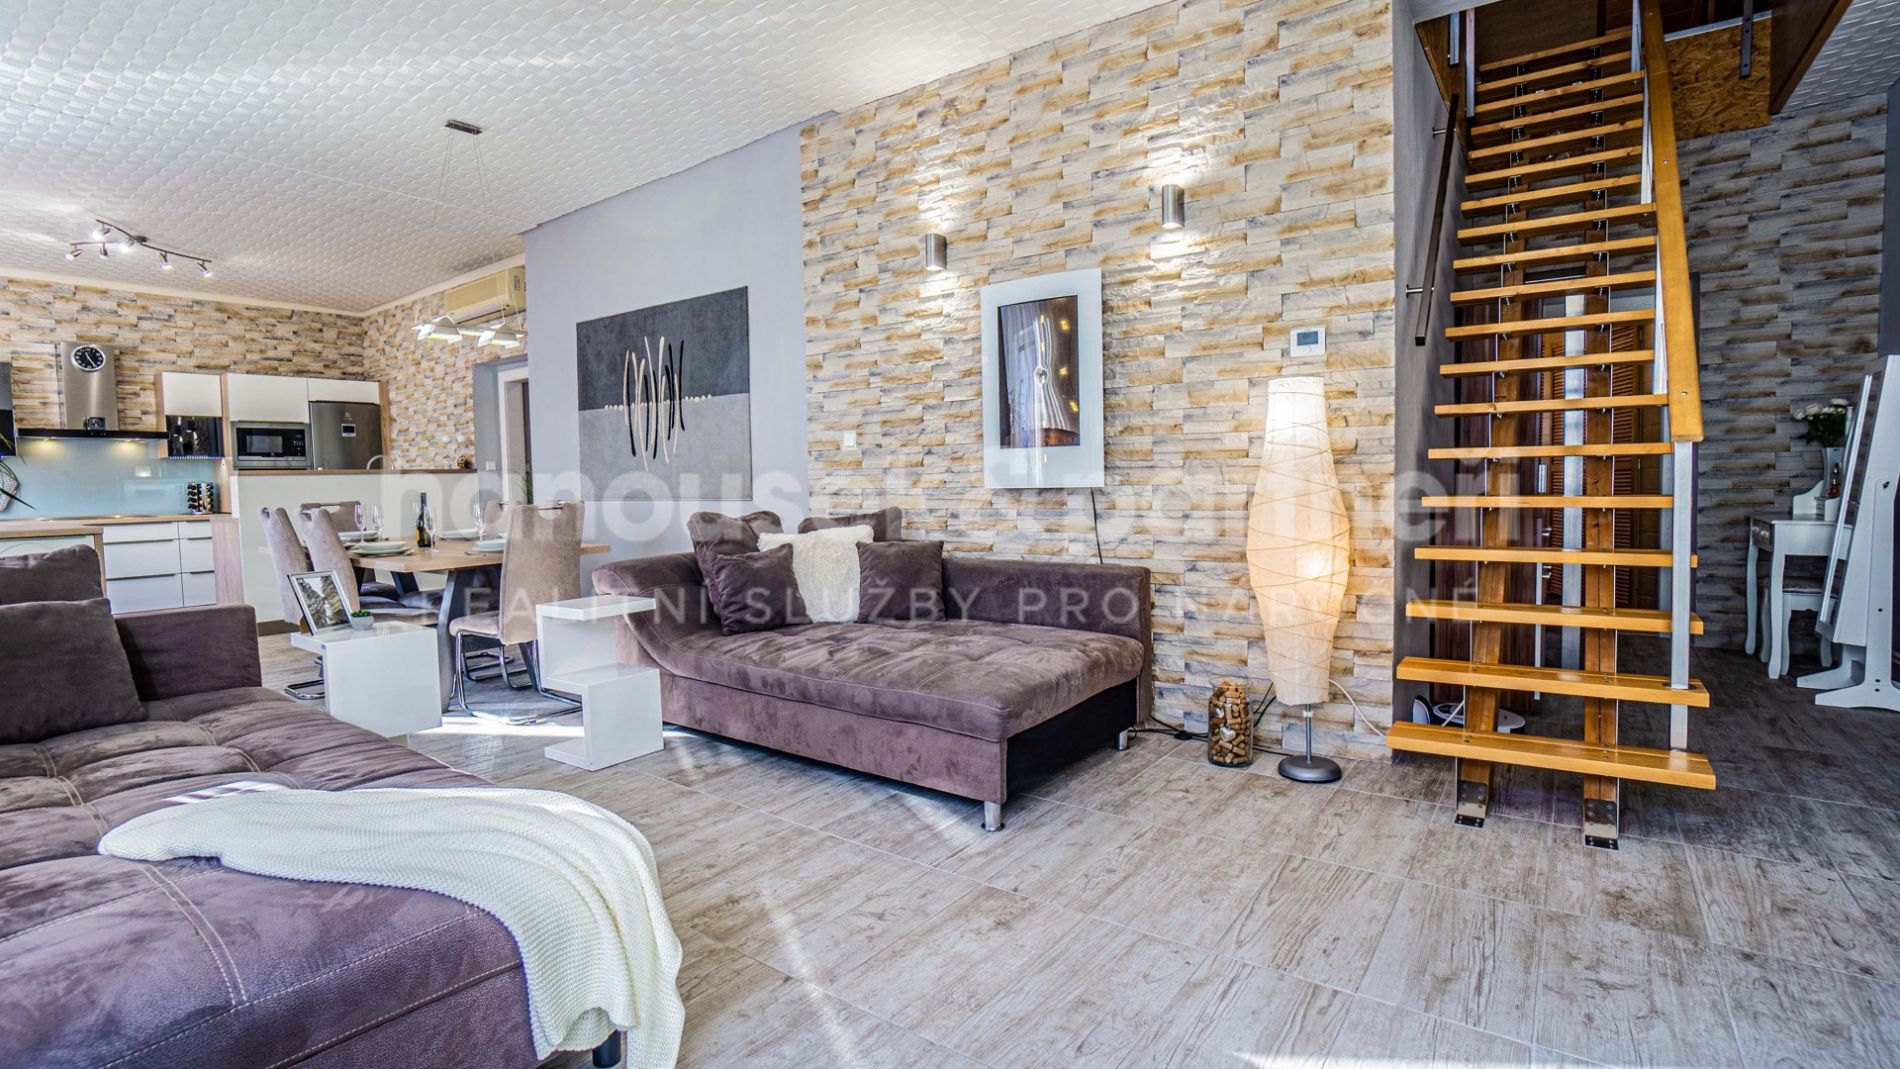 Prodej, Komerční objekt s možností bydlení, 316 m2 - Kutná Hora, obrázek č. 1